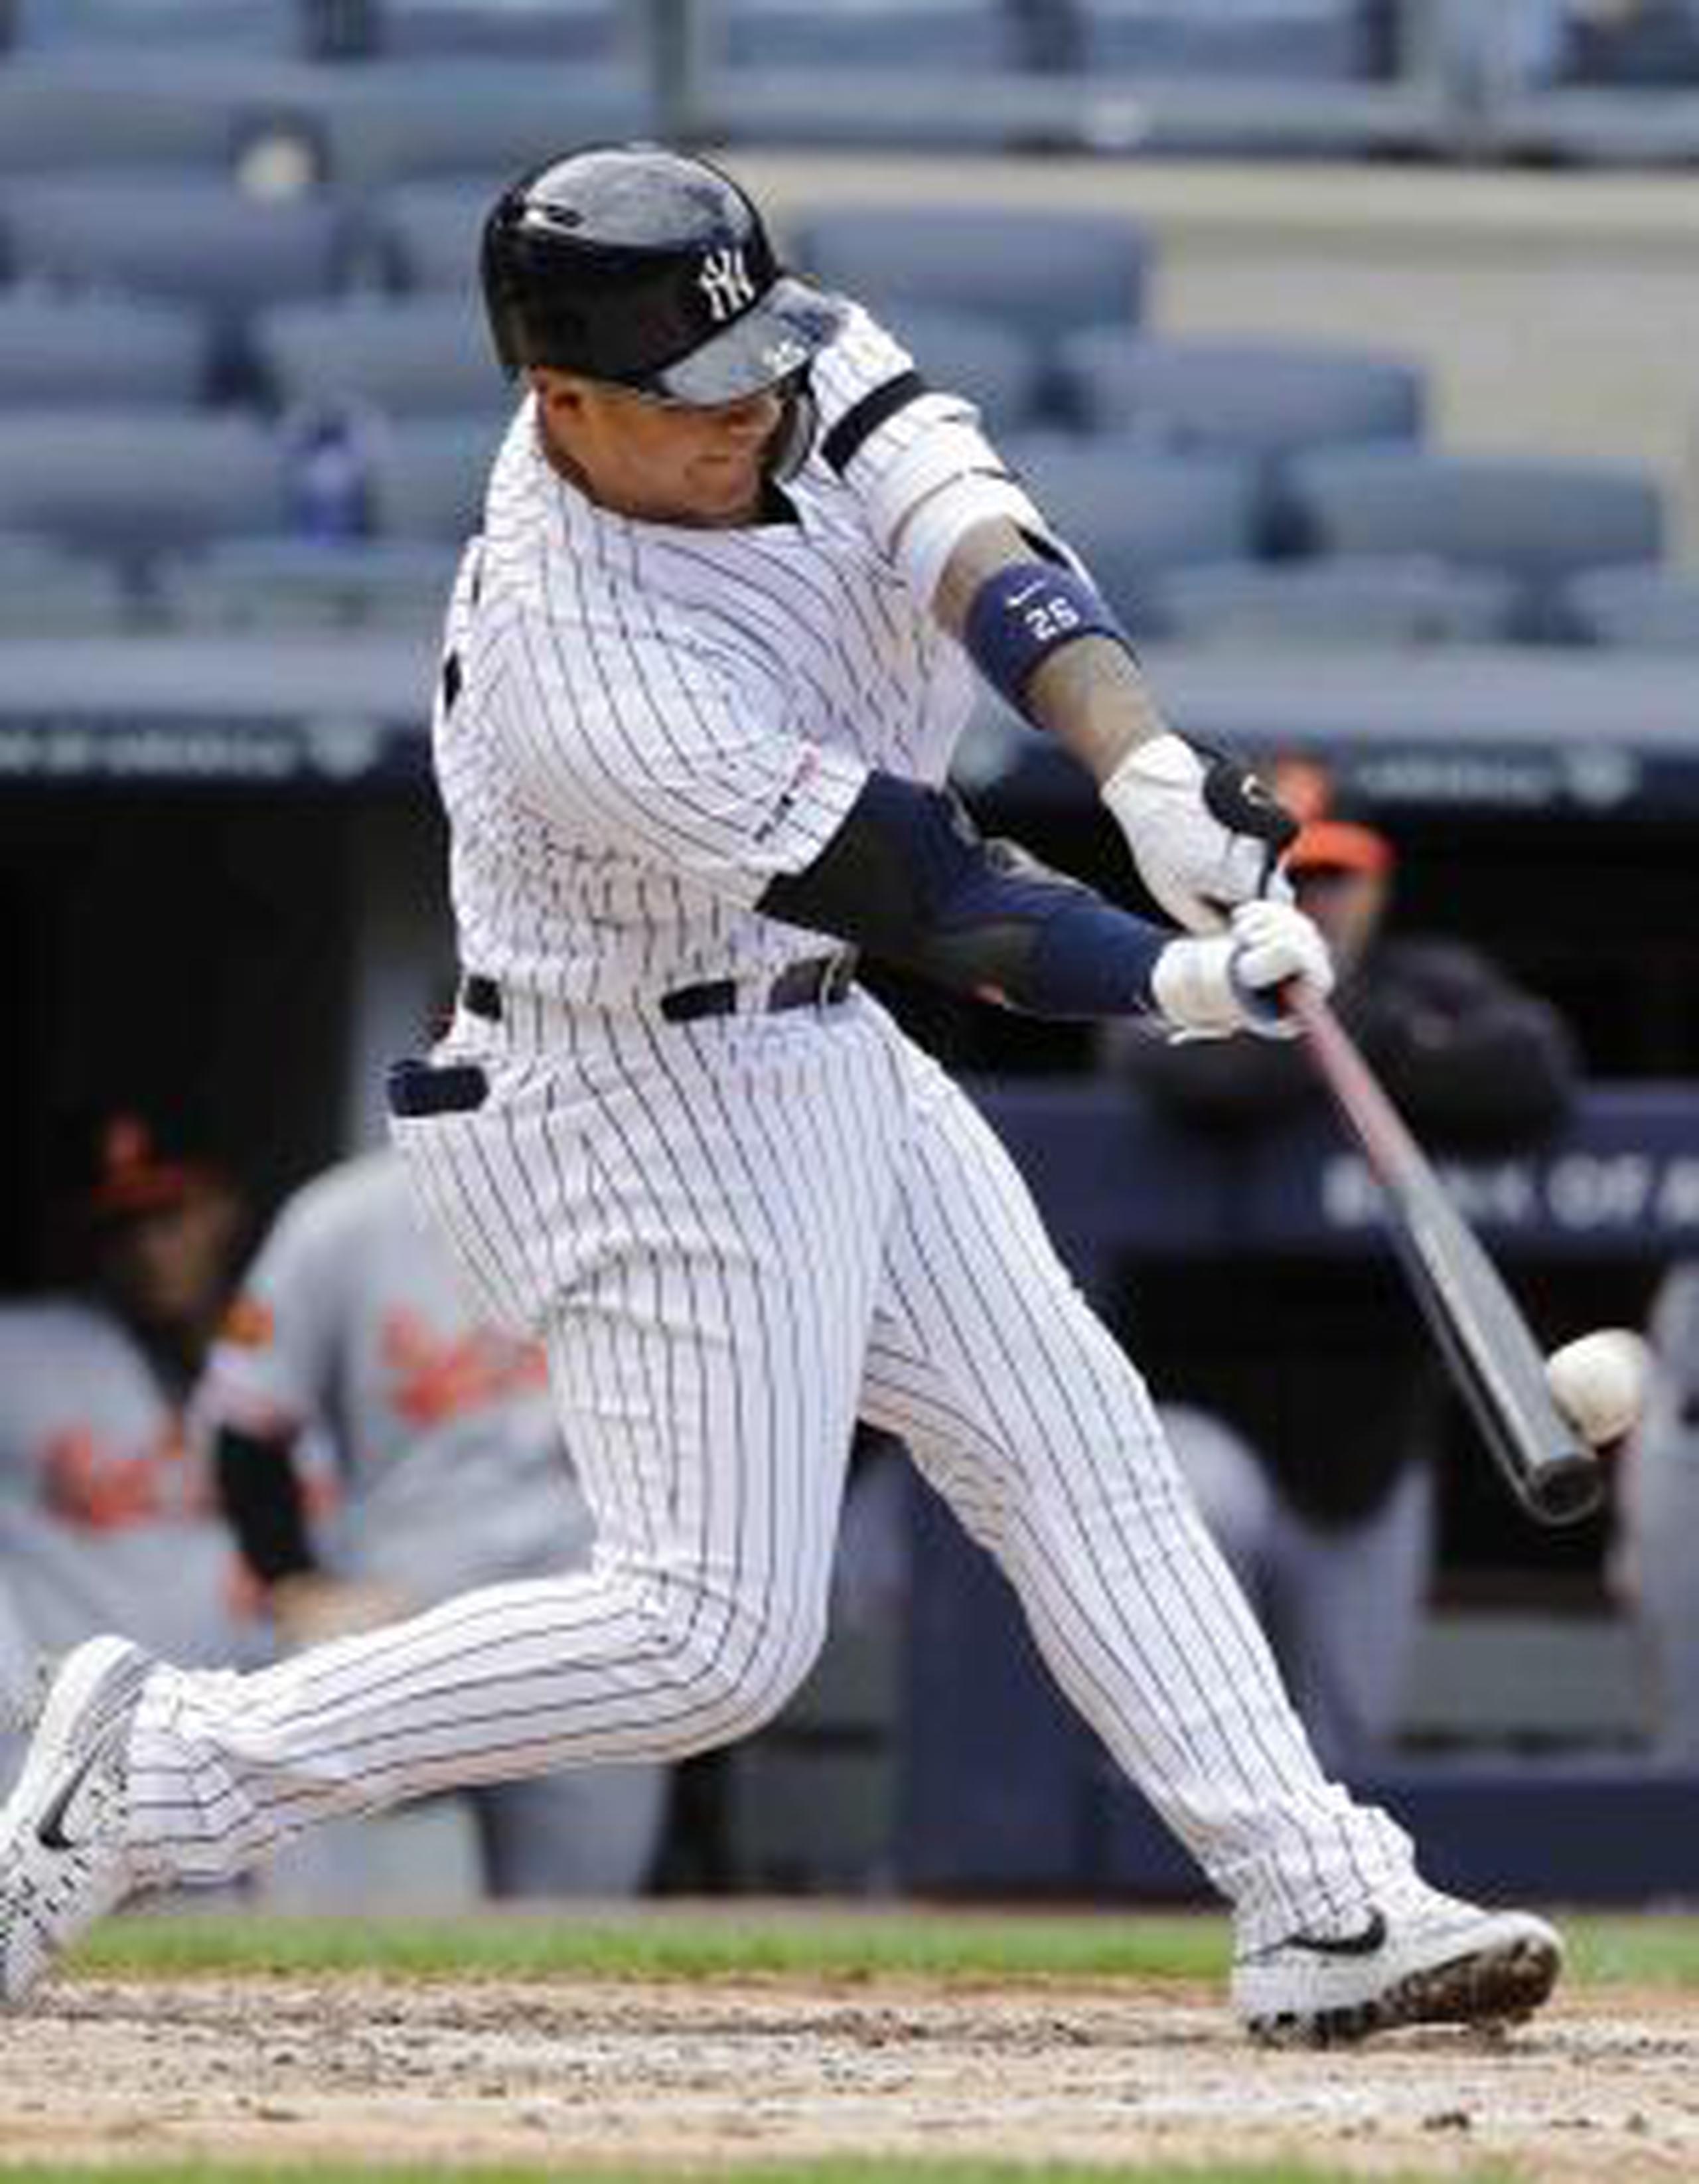 La foto muestra el momento cuando el bate de Gleyber Torres, de los Yankees, conecta la pelota para uno de sus dos jonrones del partido.  (AP / Frank Franklin II)